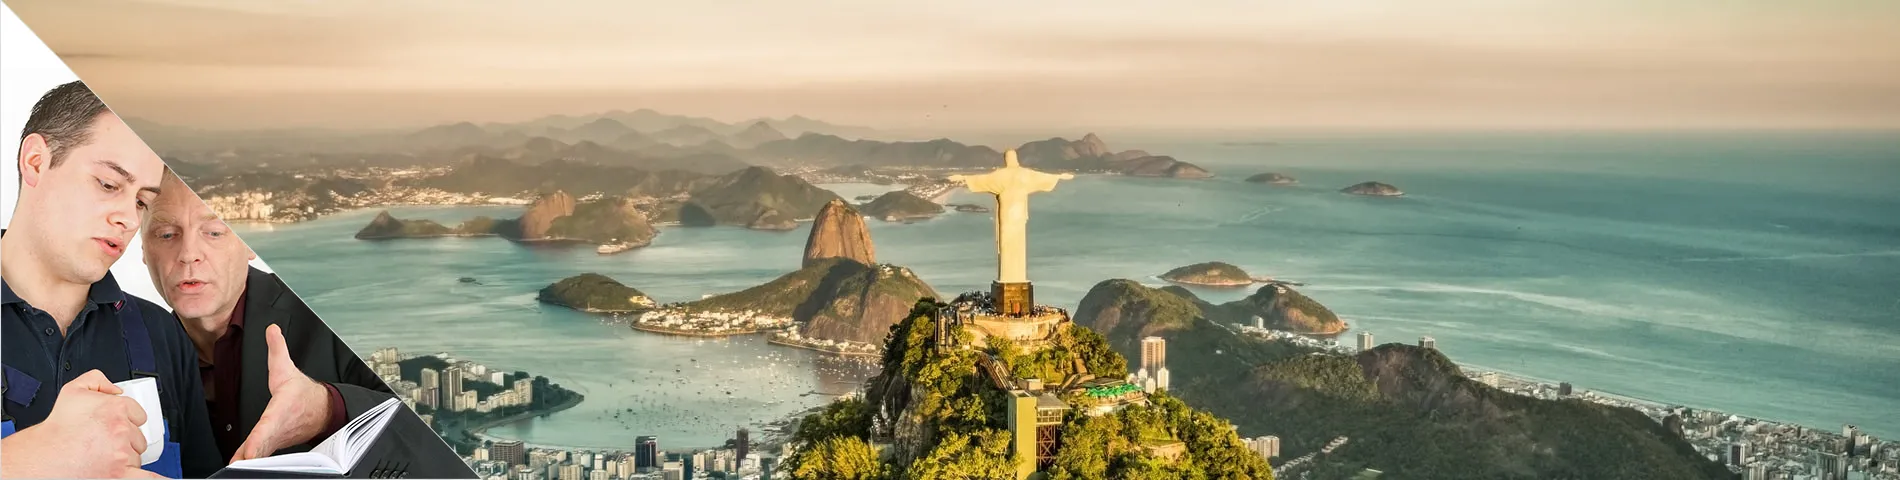 Rio de Janeiro - One-to-One